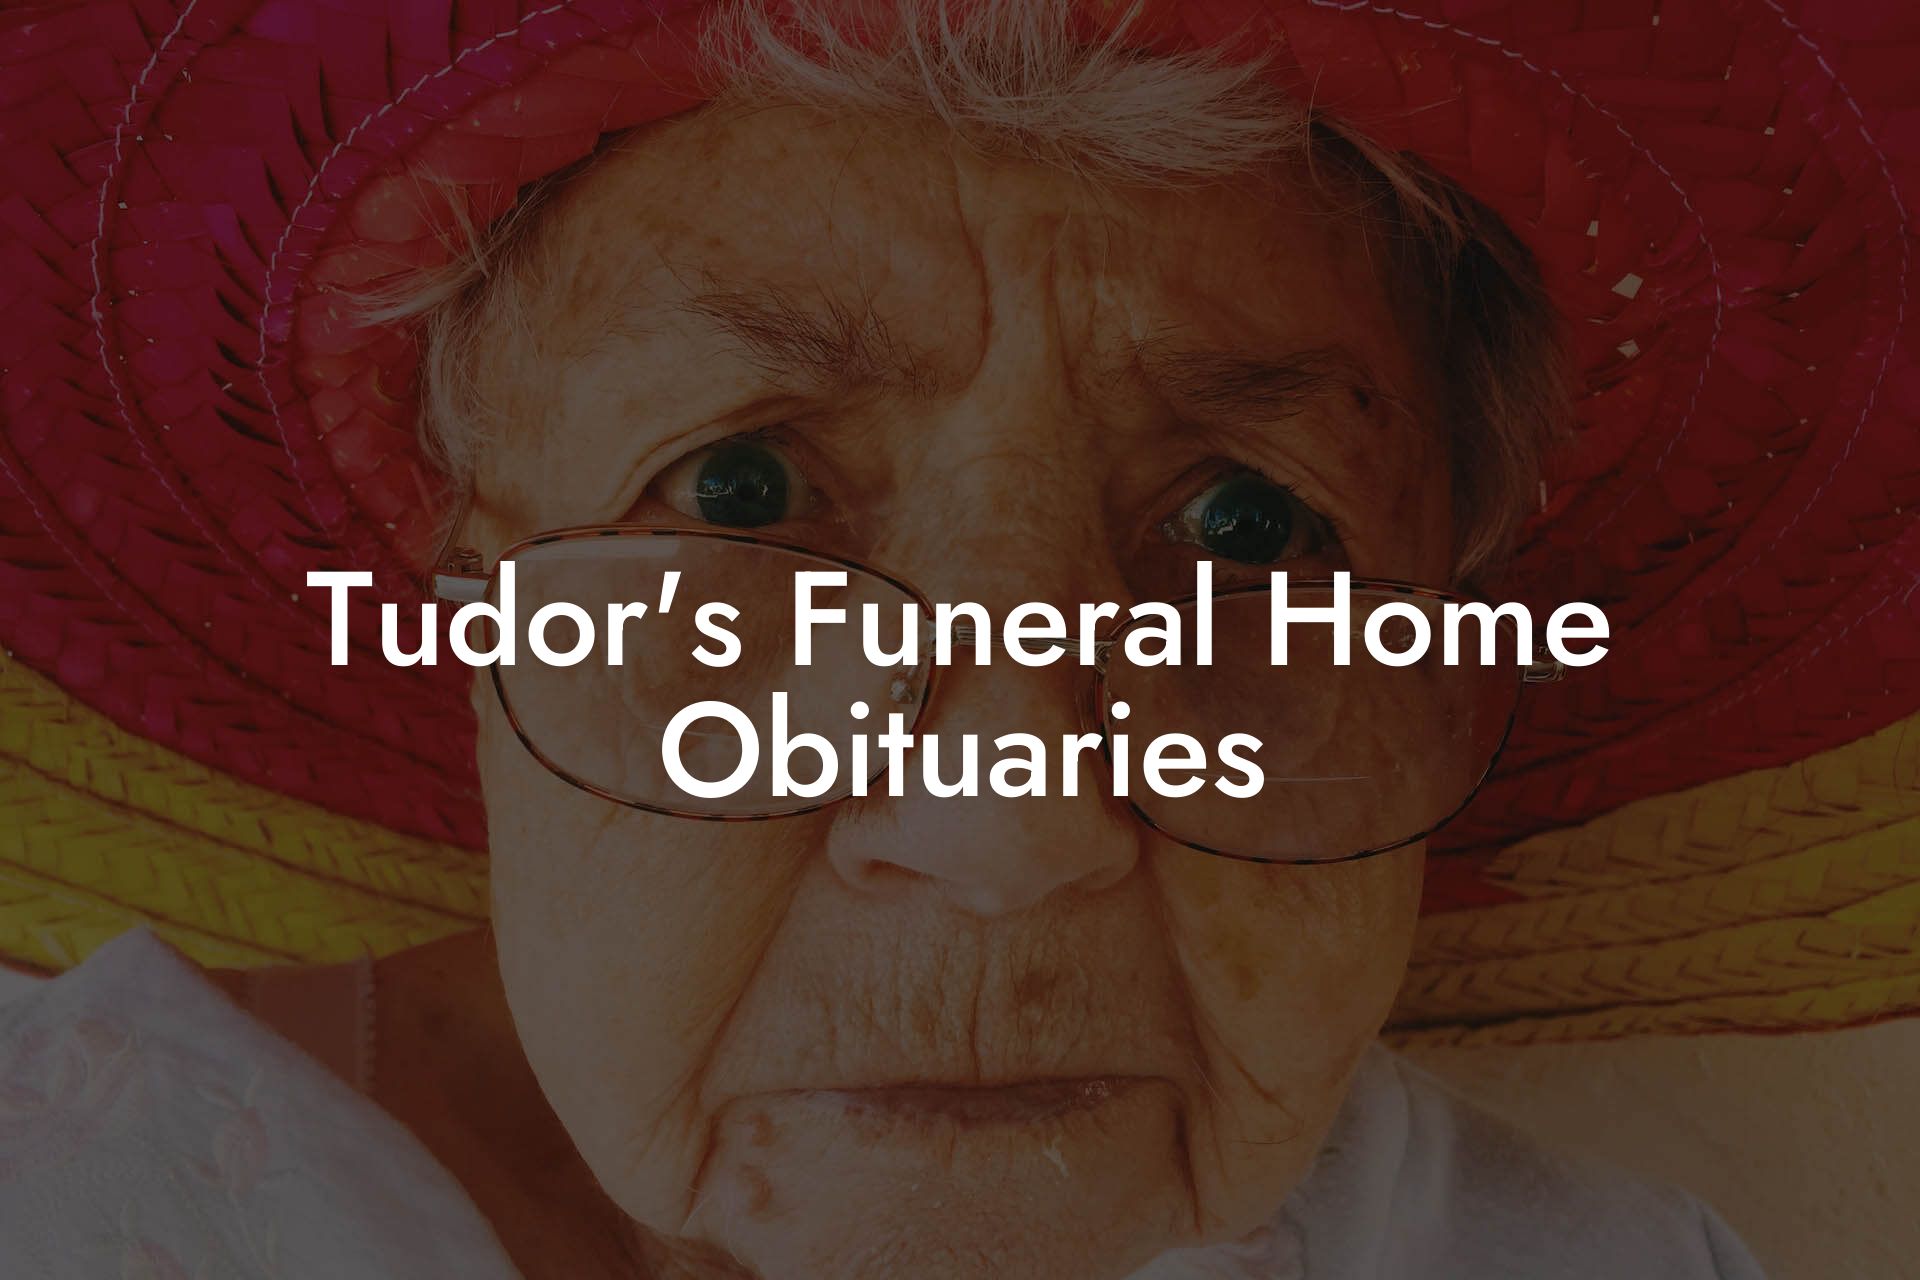 Tudor's Funeral Home Obituaries